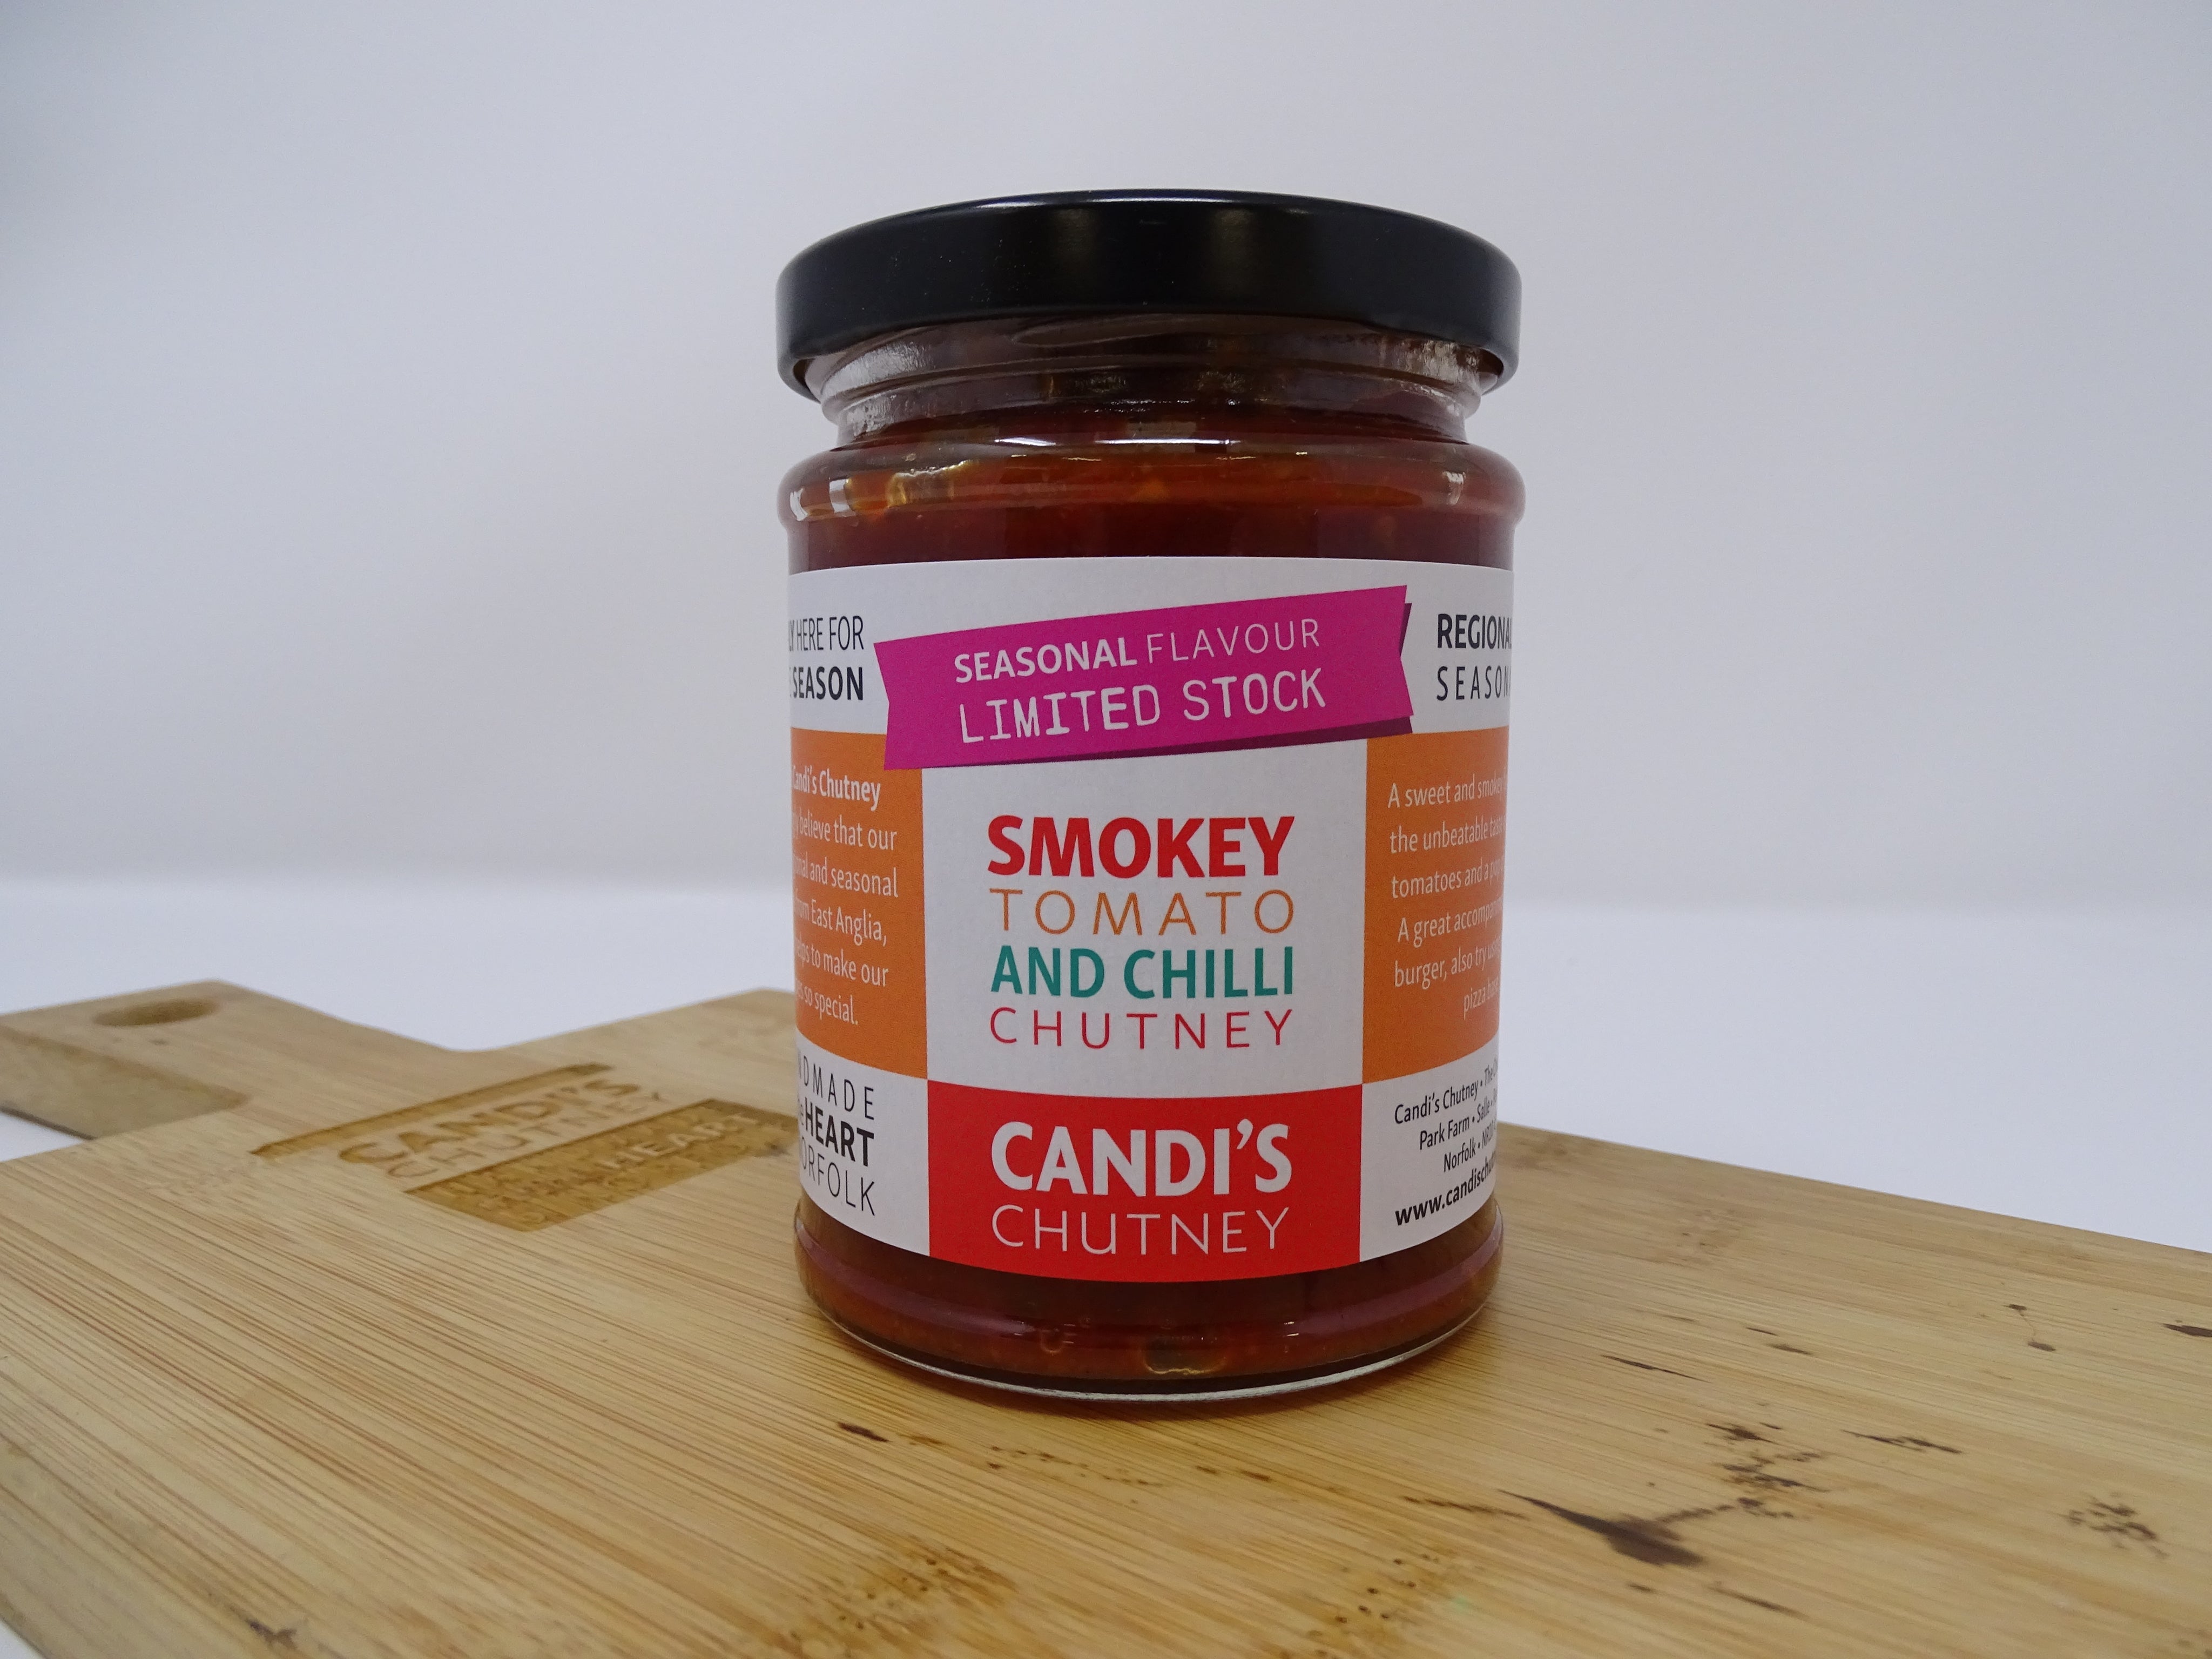 Smokey Tomato & Chilli Chutney - 284g - SEASONAL SPECIAL